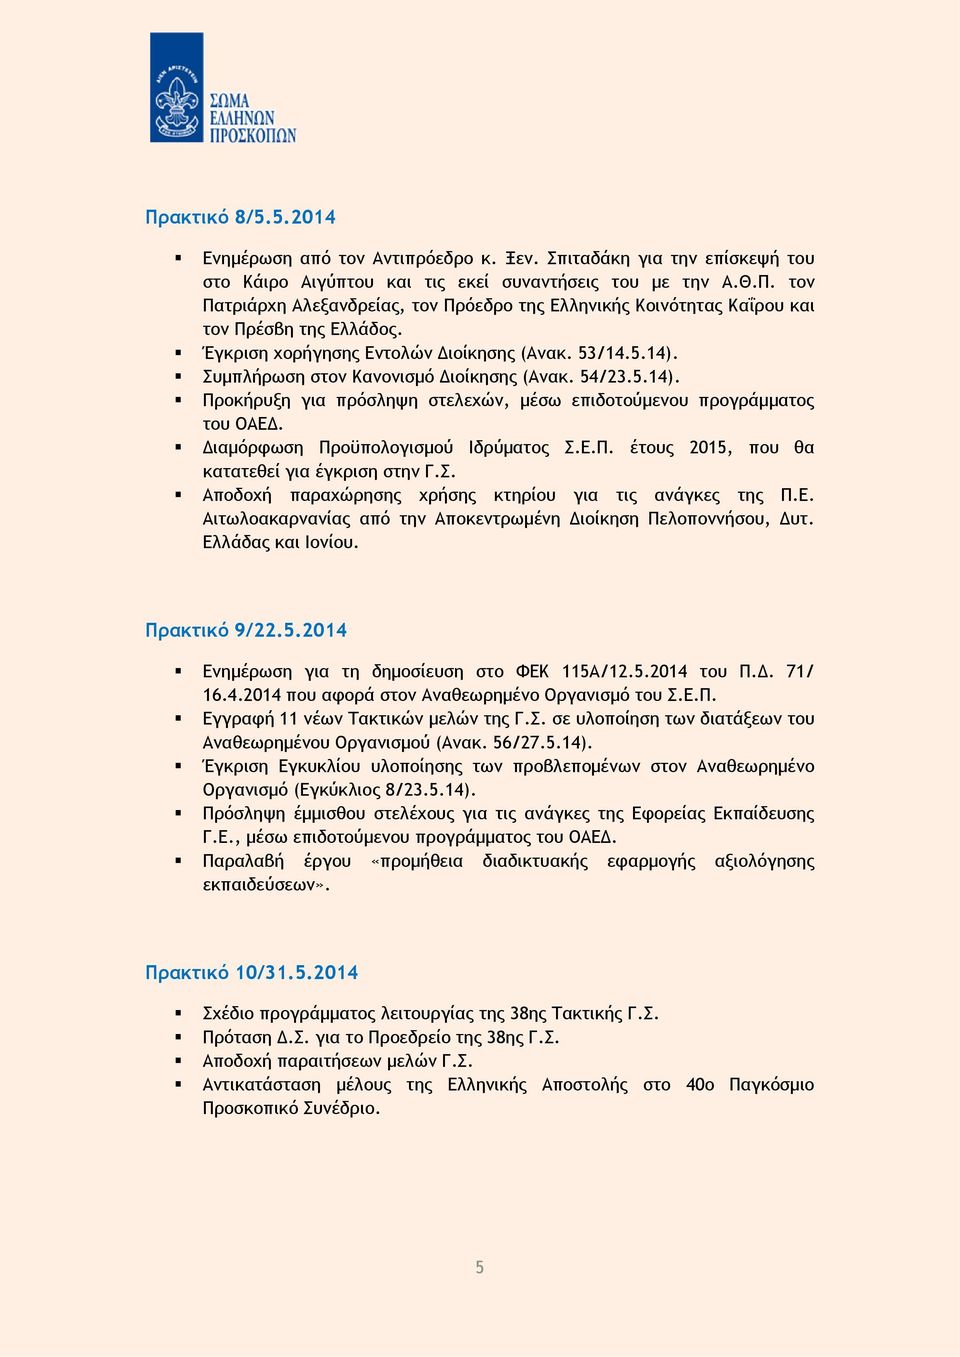 Σ. Αποδοχή παραχώρησης χρήσης κτηρίου για τις ανάγκες της Π.Ε. Αιτωλοακαρνανίας από την Αποκεντρωμένη Διοίκηση Πελοποννήσου, Δυτ. Ελλάδας και Ιονίου. Πρακτικό 9/22.5.